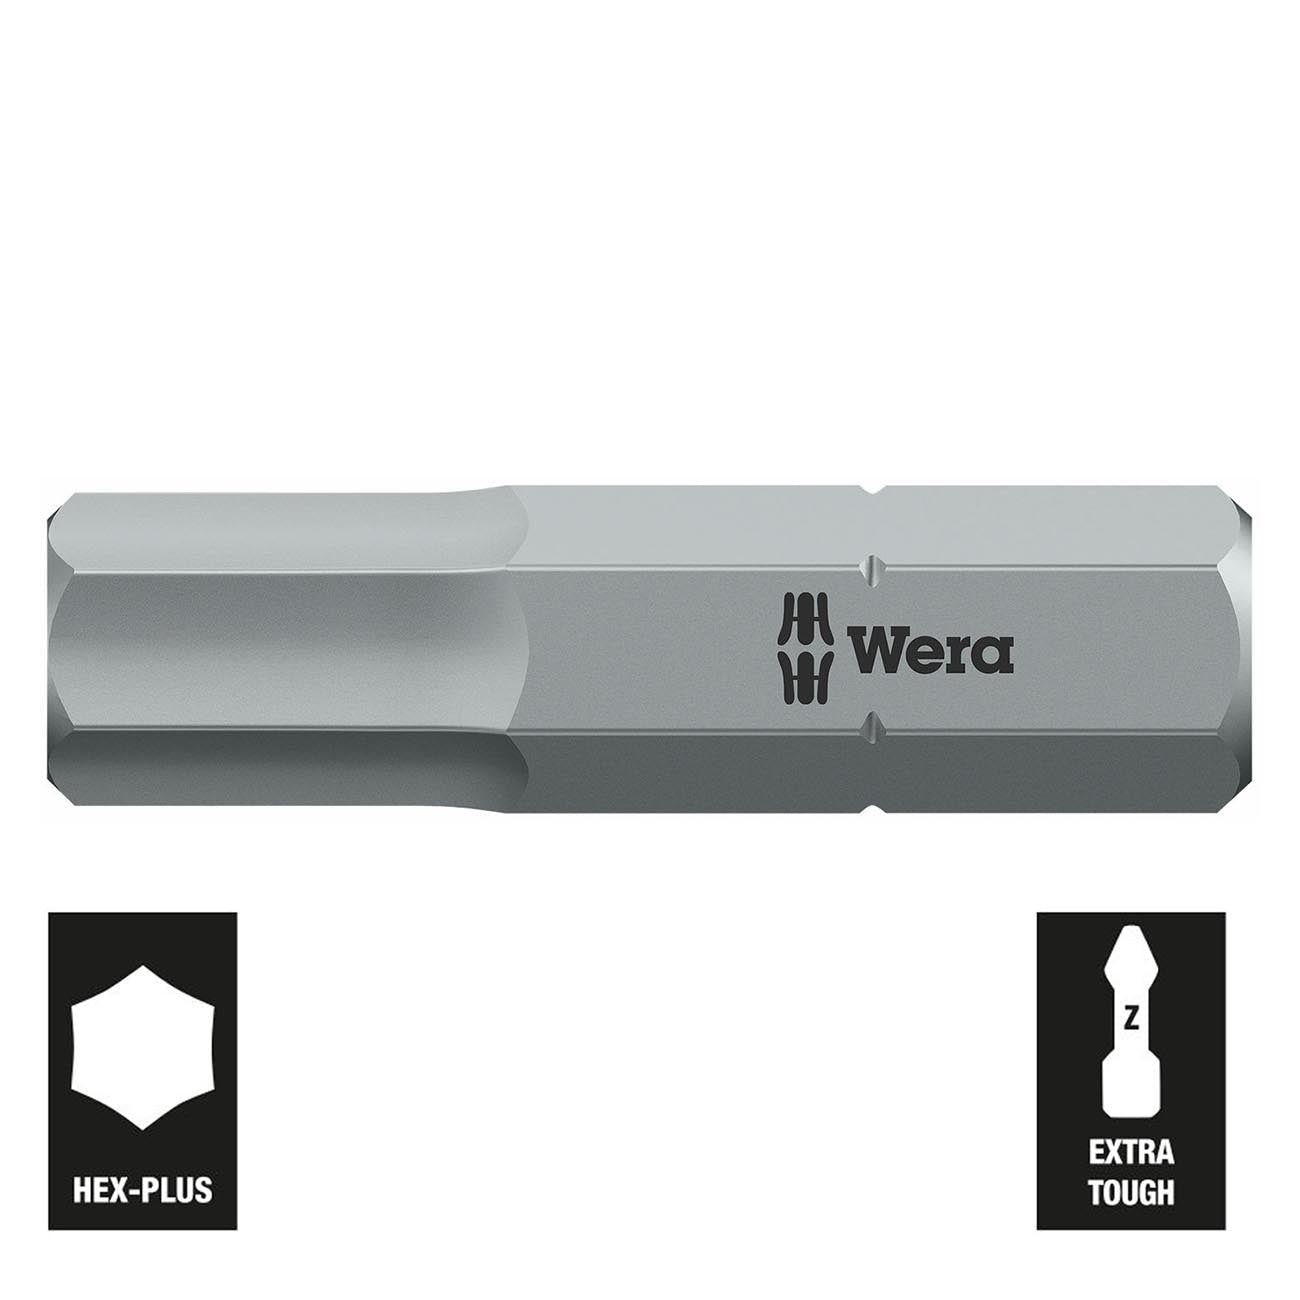 Wera 7mm Hex-plus Bit - 1/4" Drive